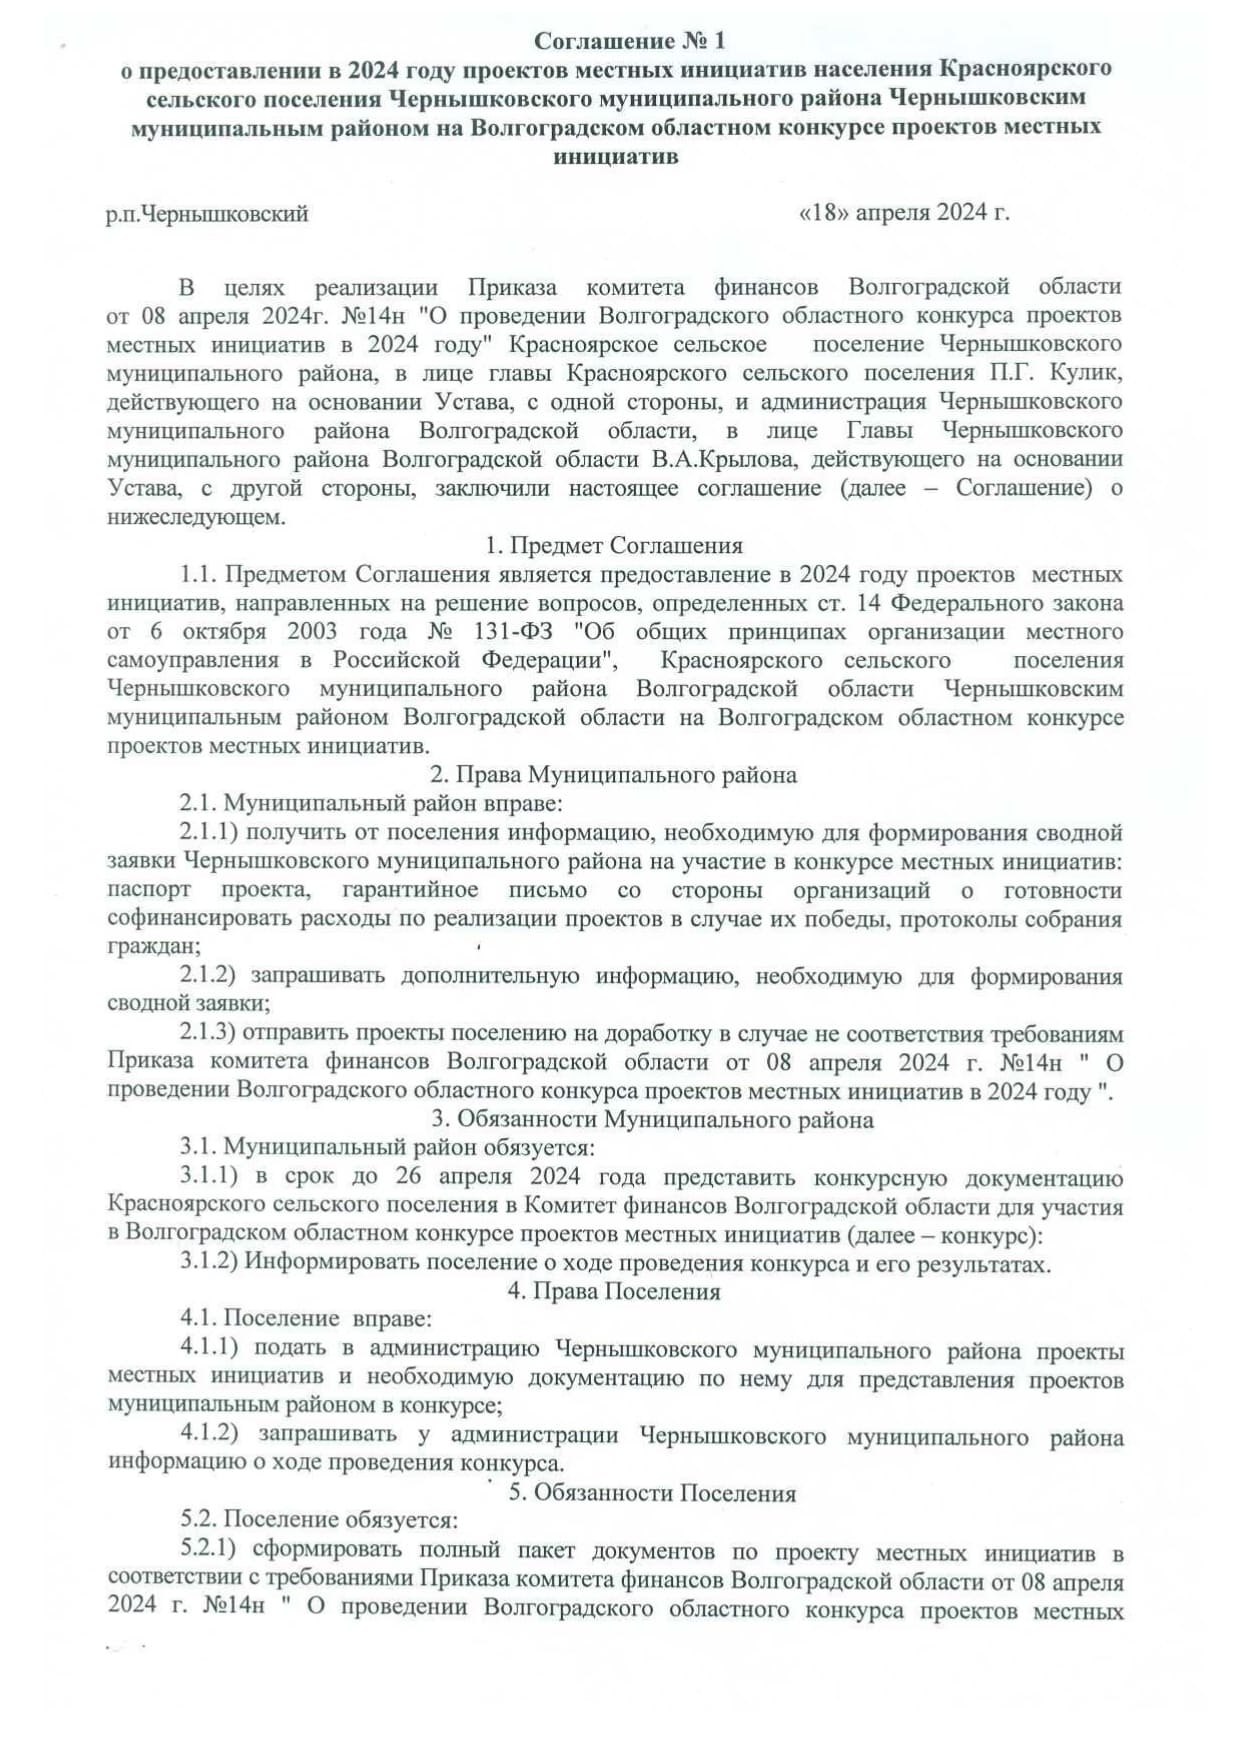 Соглашение 1 page 0001